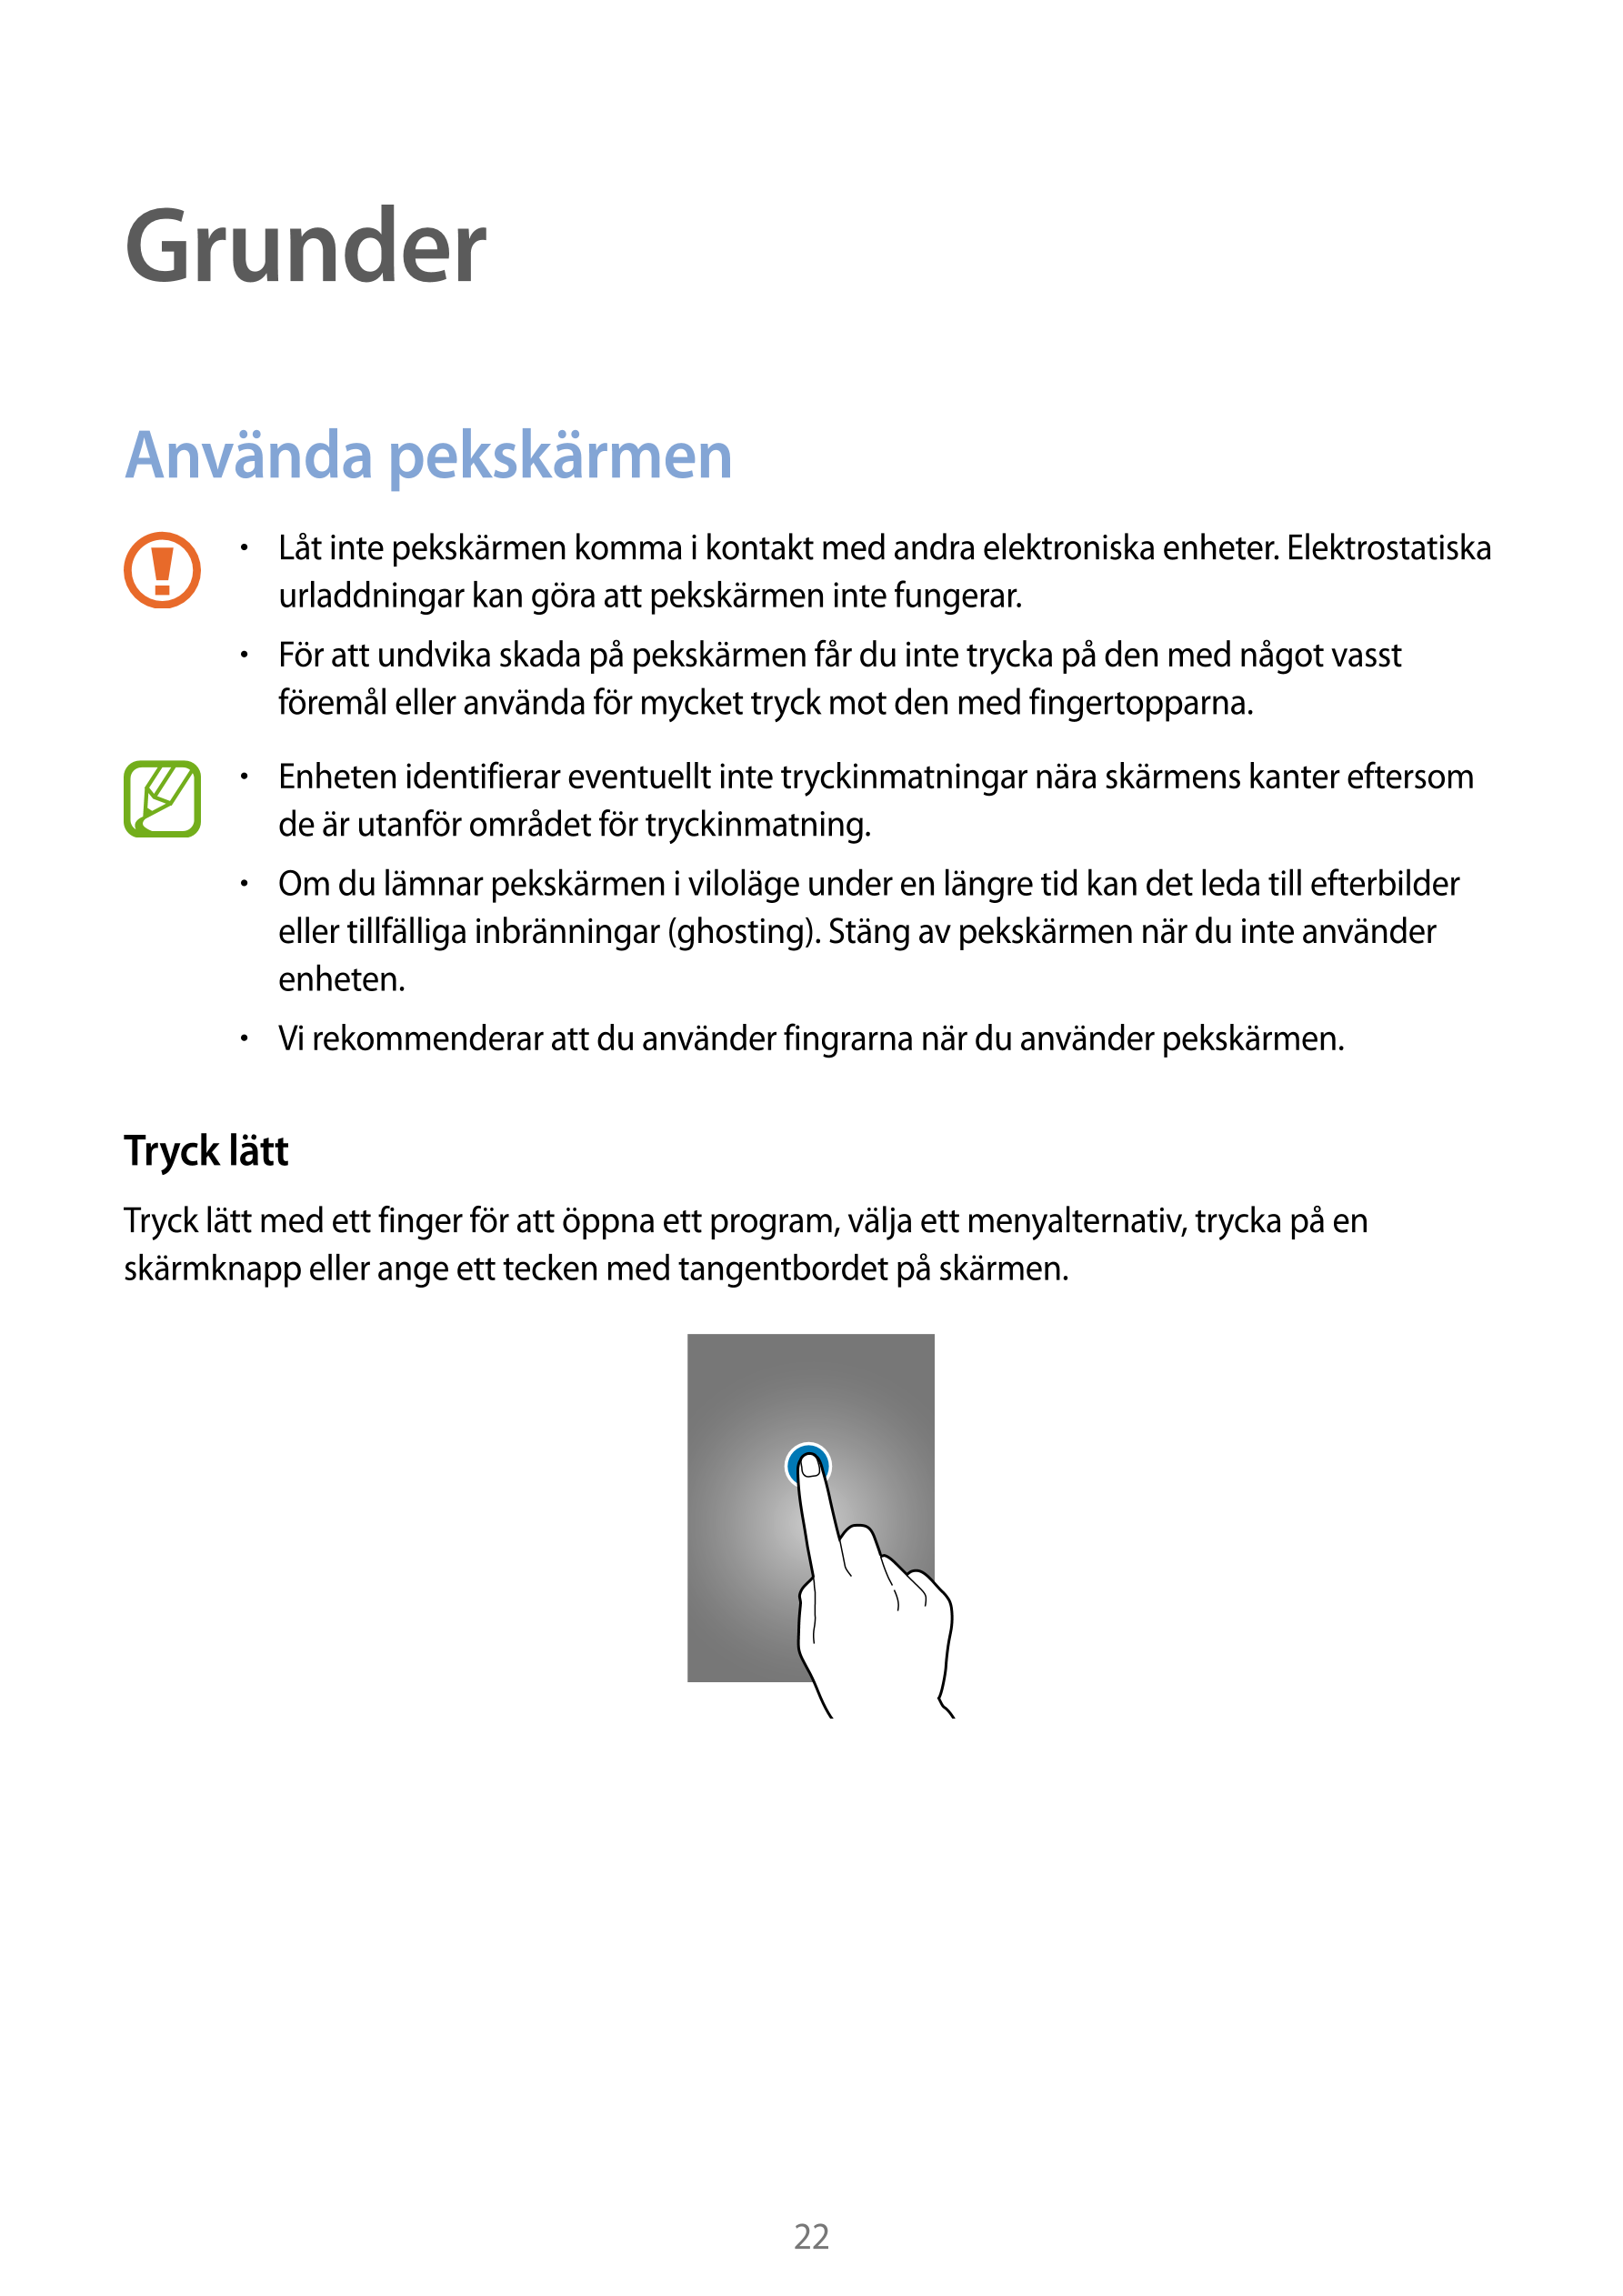 Grunder
Använda pekskärmen
•    Låt inte pekskärmen komma i kontakt med andra elektroniska enheter. Elektrostatiska 
urladdninga